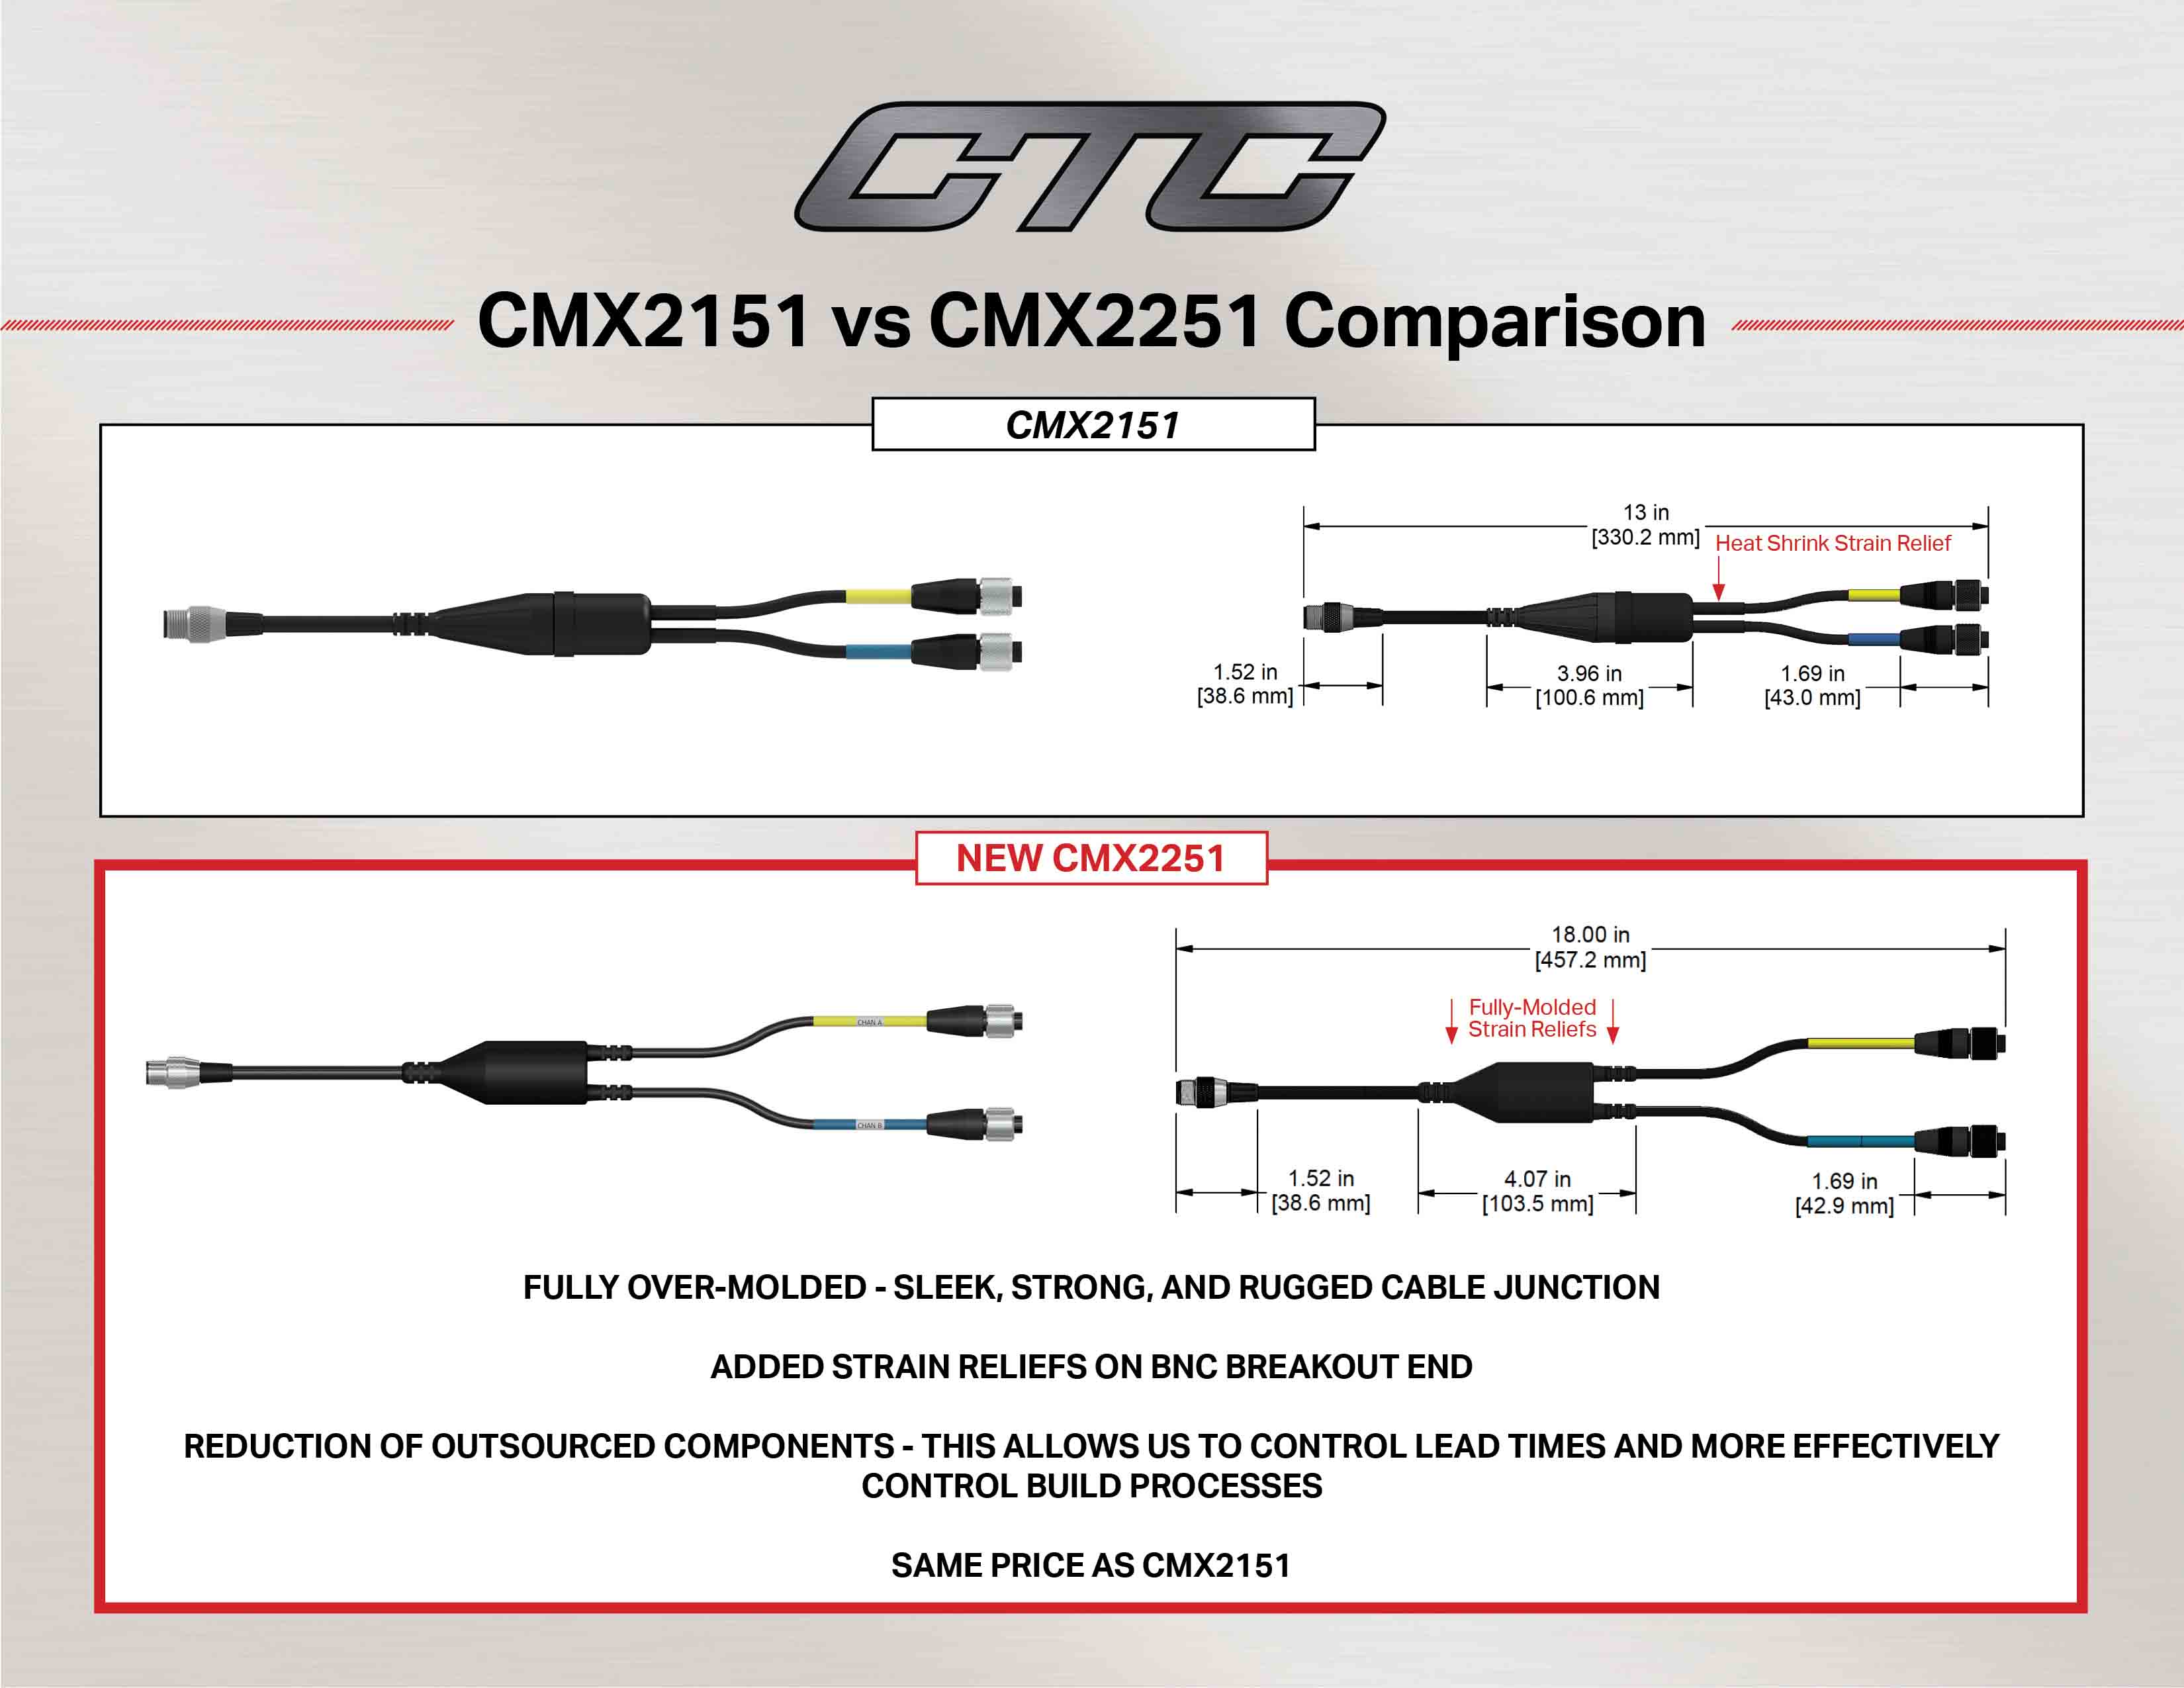 CMX2151 vs CMX2251 cable comparison diagram and measurements